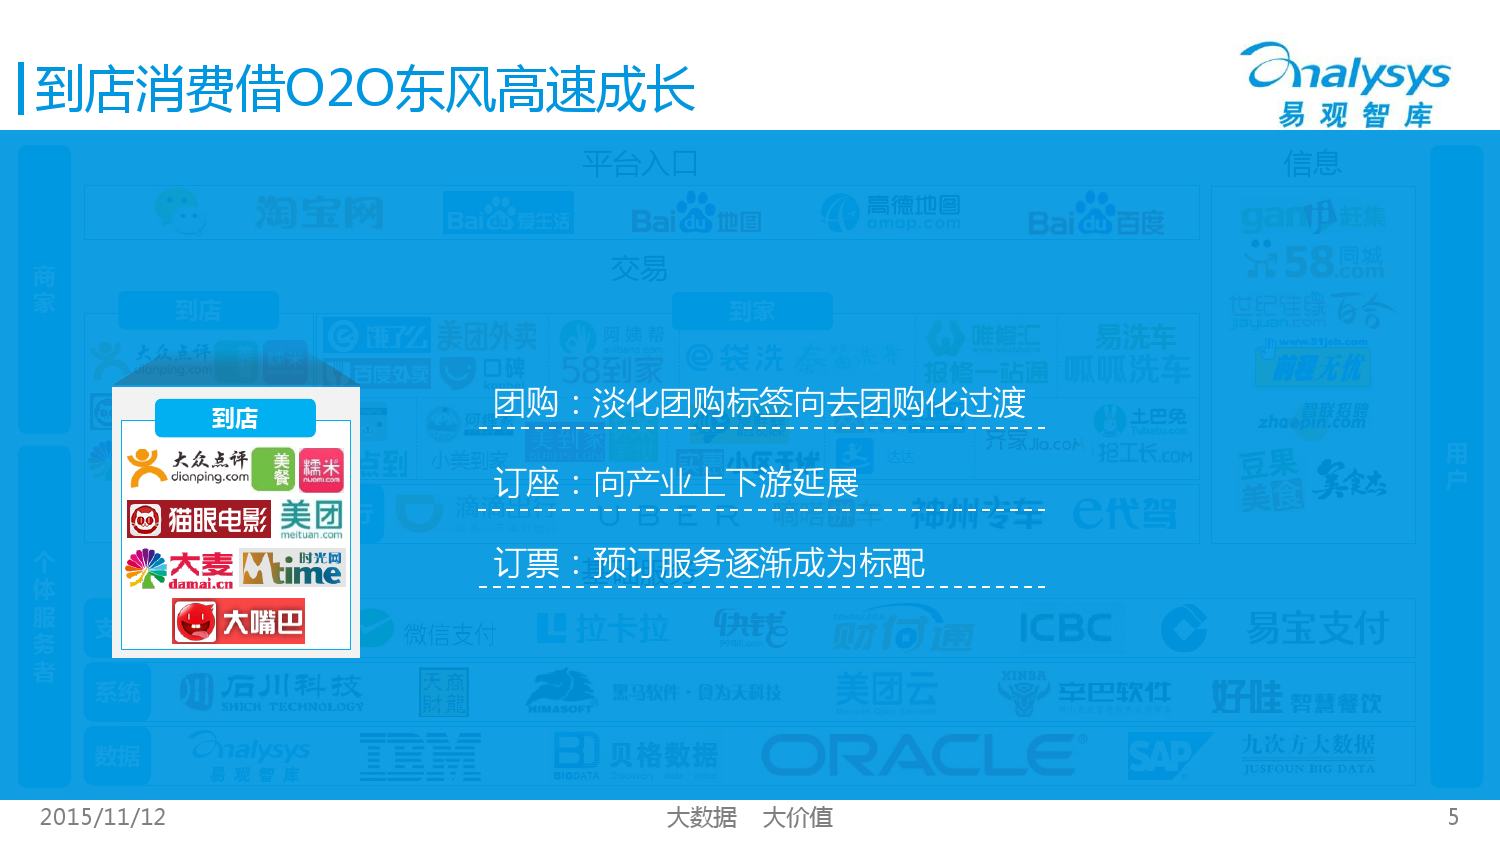 中国互联网生活服务市场生态图谱2015 01_000005